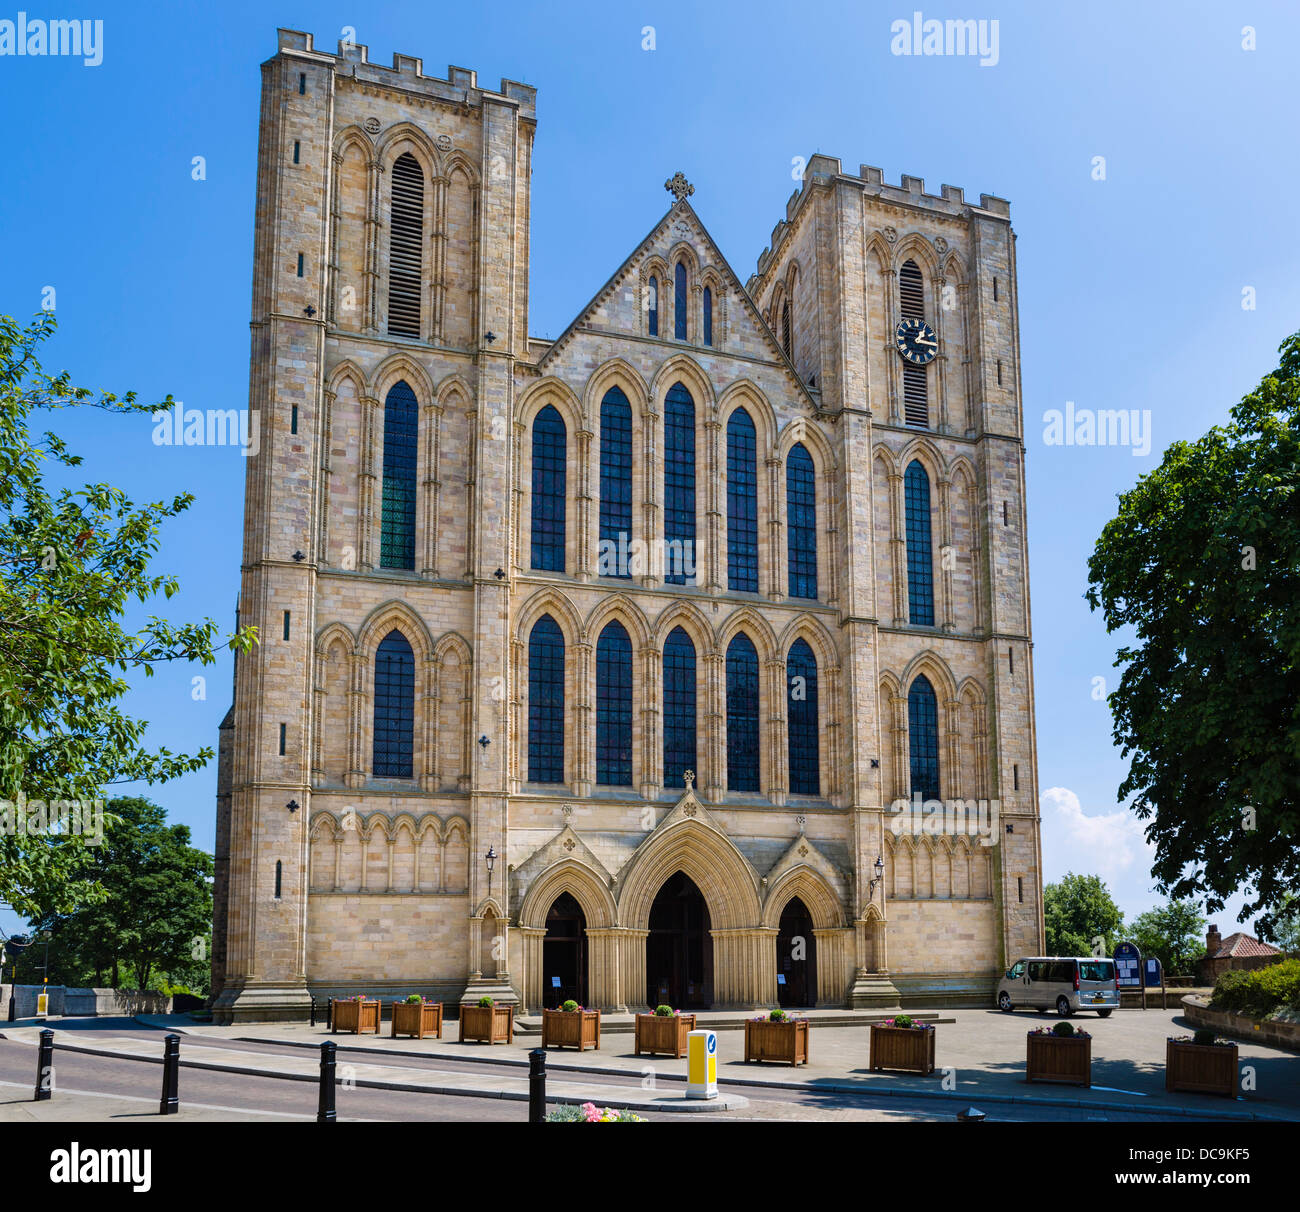 Façade de la cathédrale de Ripon, Ripon, North Yorkshire, England, UK Banque D'Images